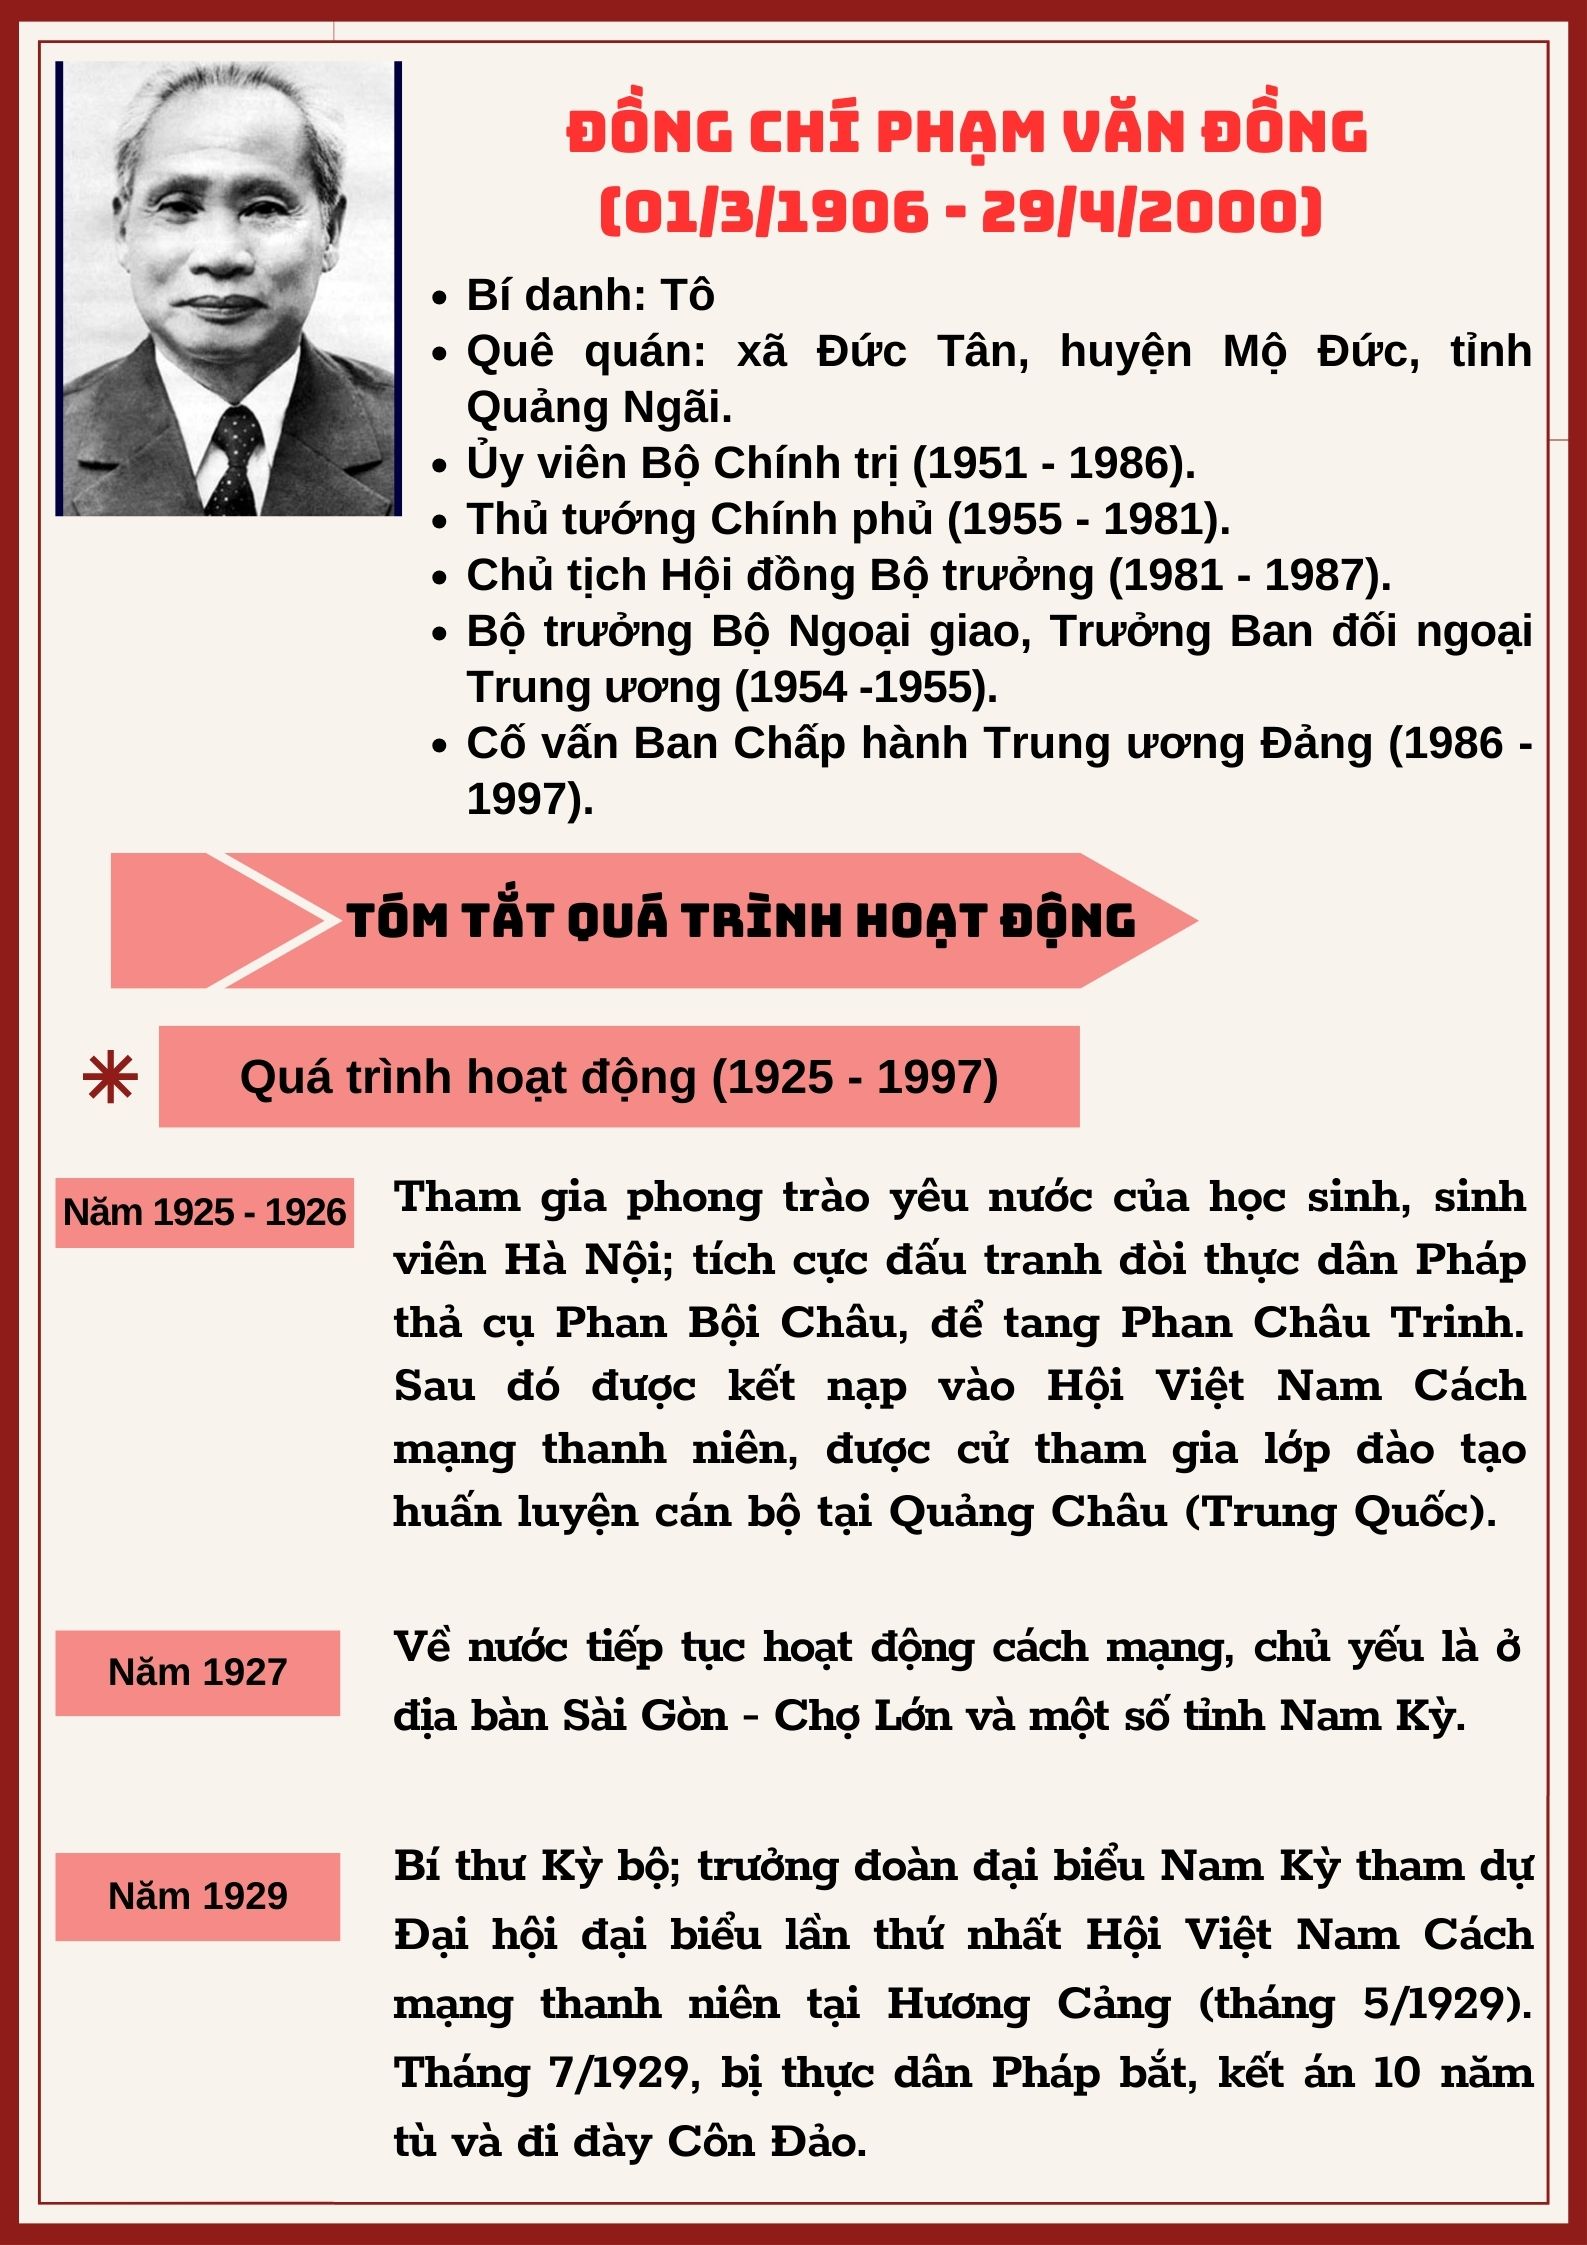 Đồng chí Phạm Văn Đồng - Lãnh đạo chủ chốt của Đảng, Nhà nước, người học trò xuất sắc của Chủ tịch Hồ Chí Minh